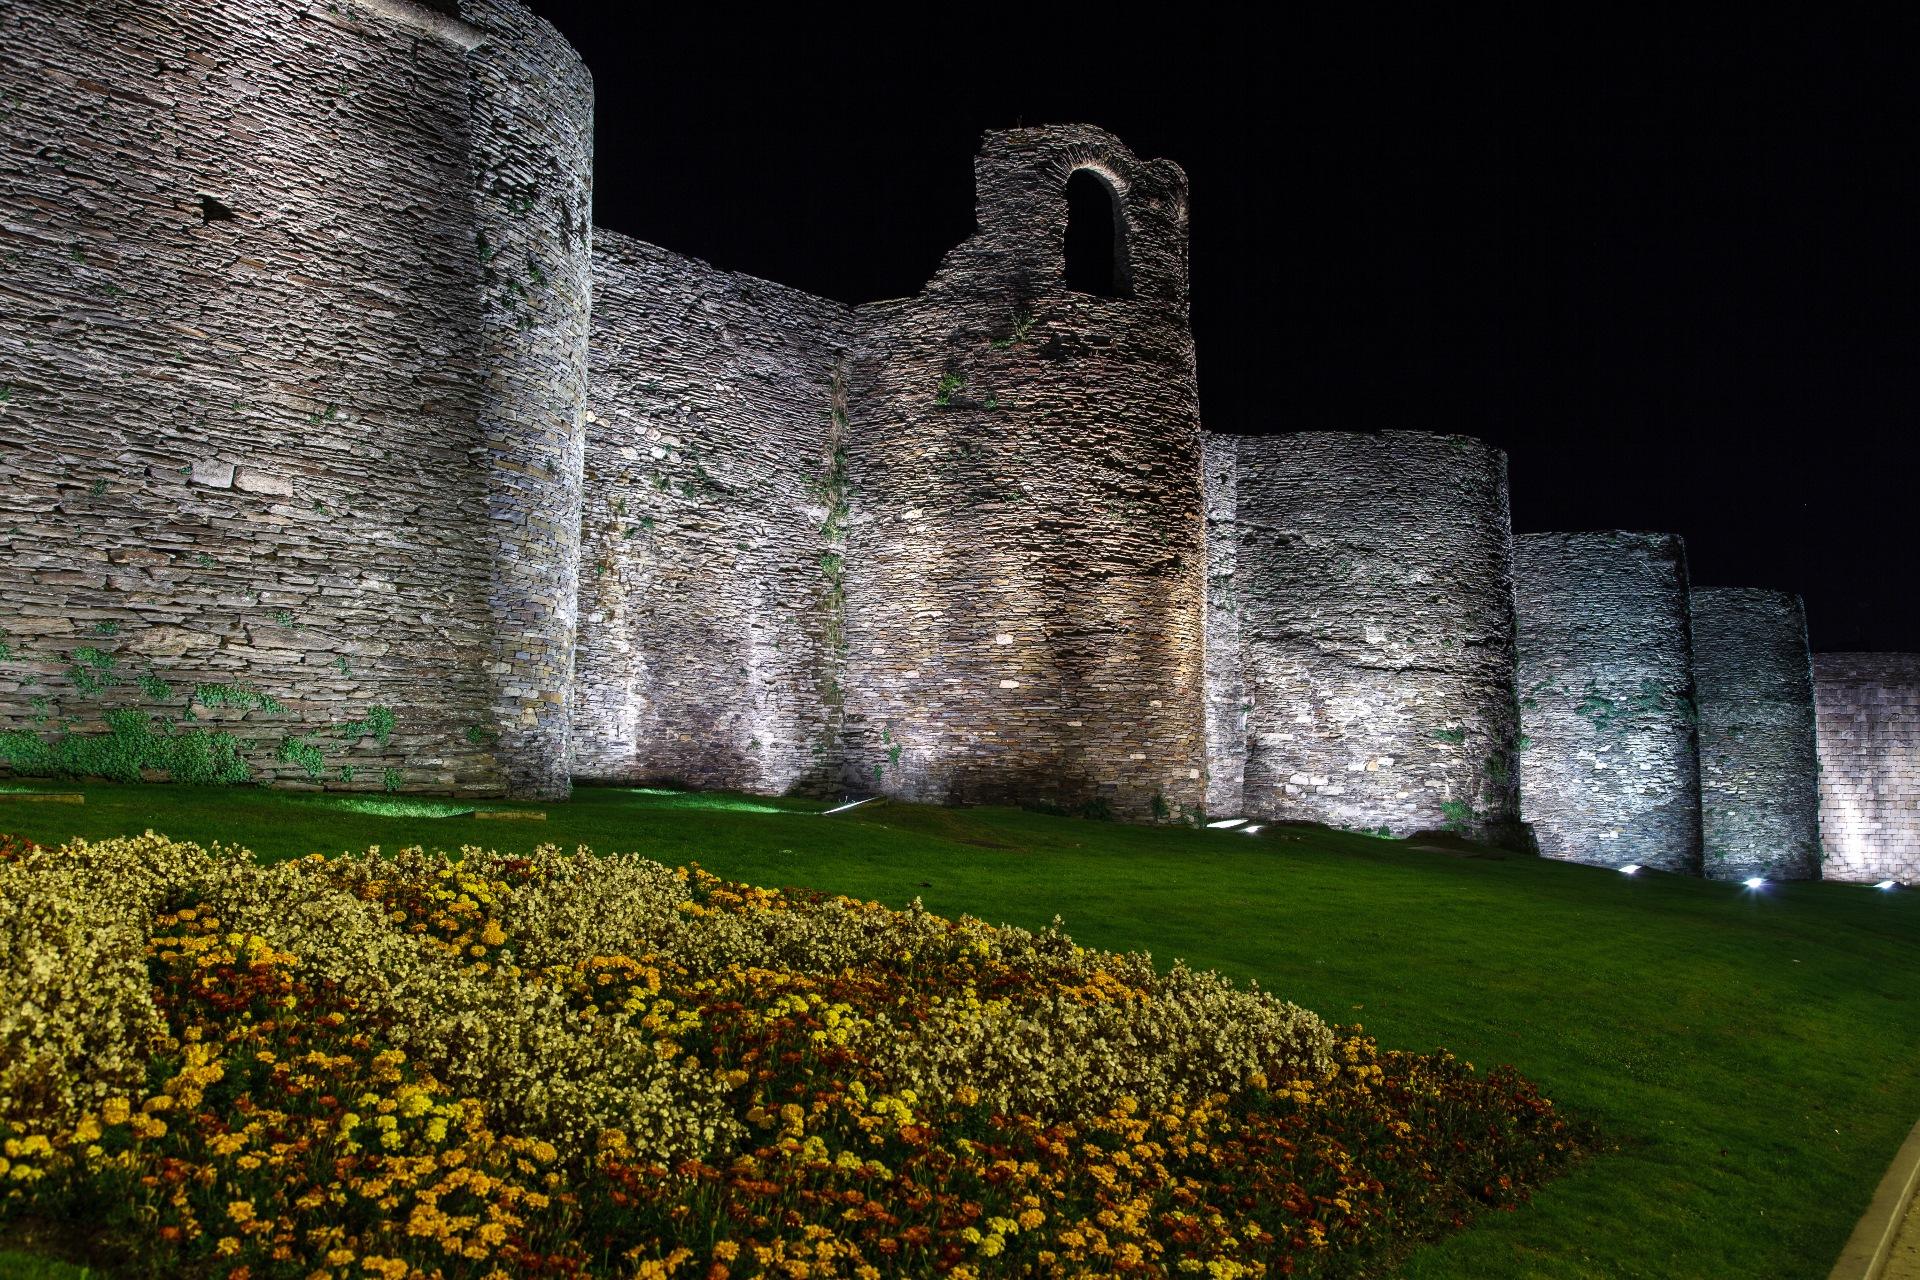 La muralla romana de Lugo iluminada de noche. Foto: Shutterstock